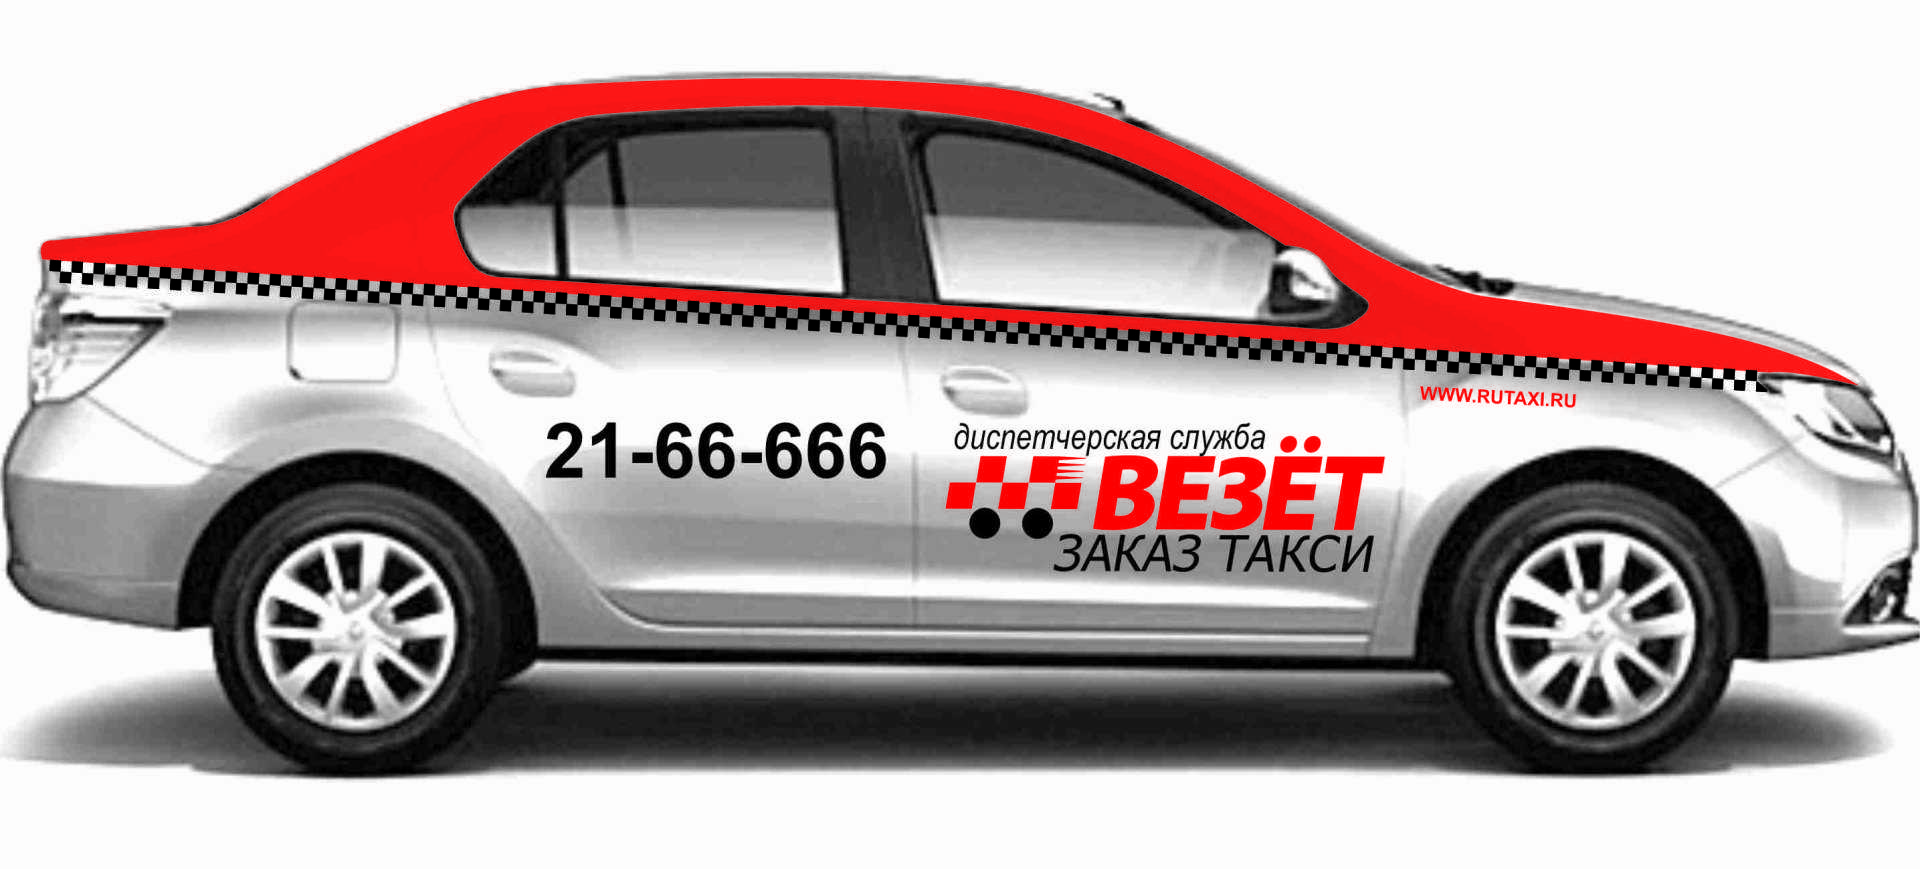 Заказать такси в краснодаре недорого по телефону. Такси везет Краснодар. Брендирование везет такси. Такси везет машины. Авто с наклейками везёт такси.